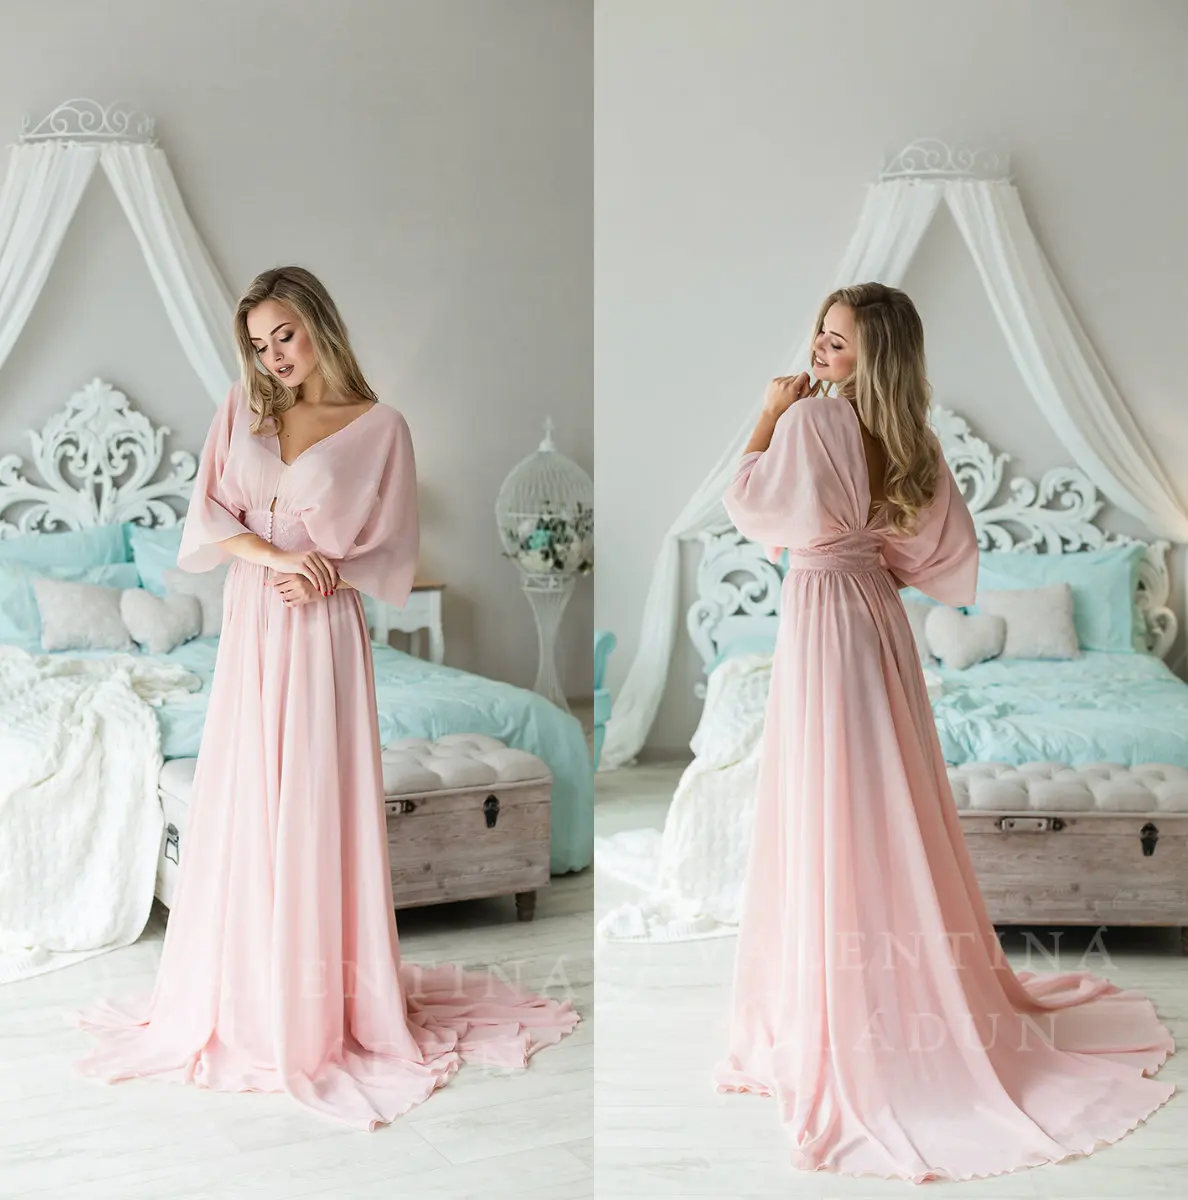 

Bathrobe for Women Pink Chiffon Full Length Lingerie Nightgown Pajamas Sleepwear Women's Luxury Gowns Housecoat Nightwear